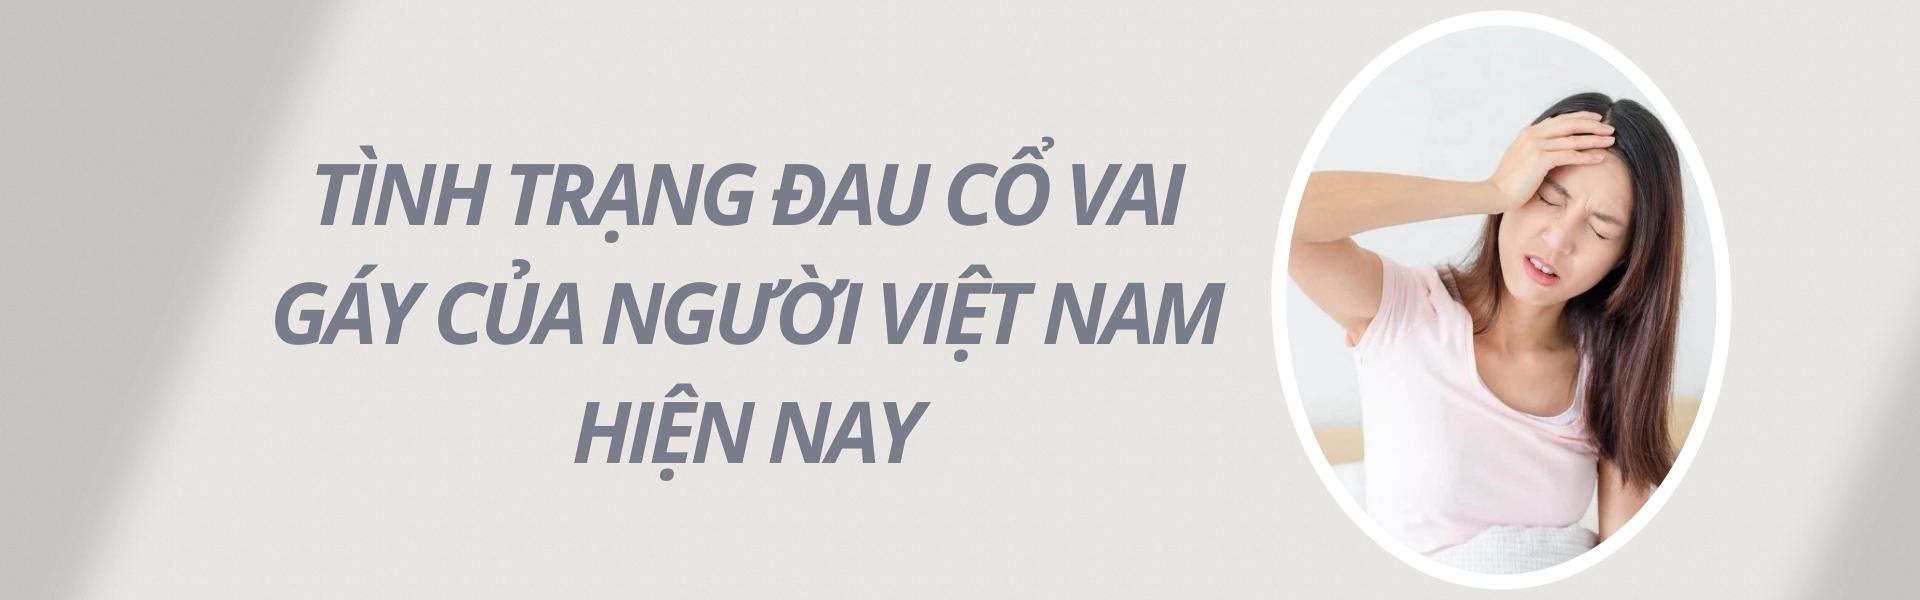 Tình trạng đau cổ vai gáy của người Việt Nam hiện nay